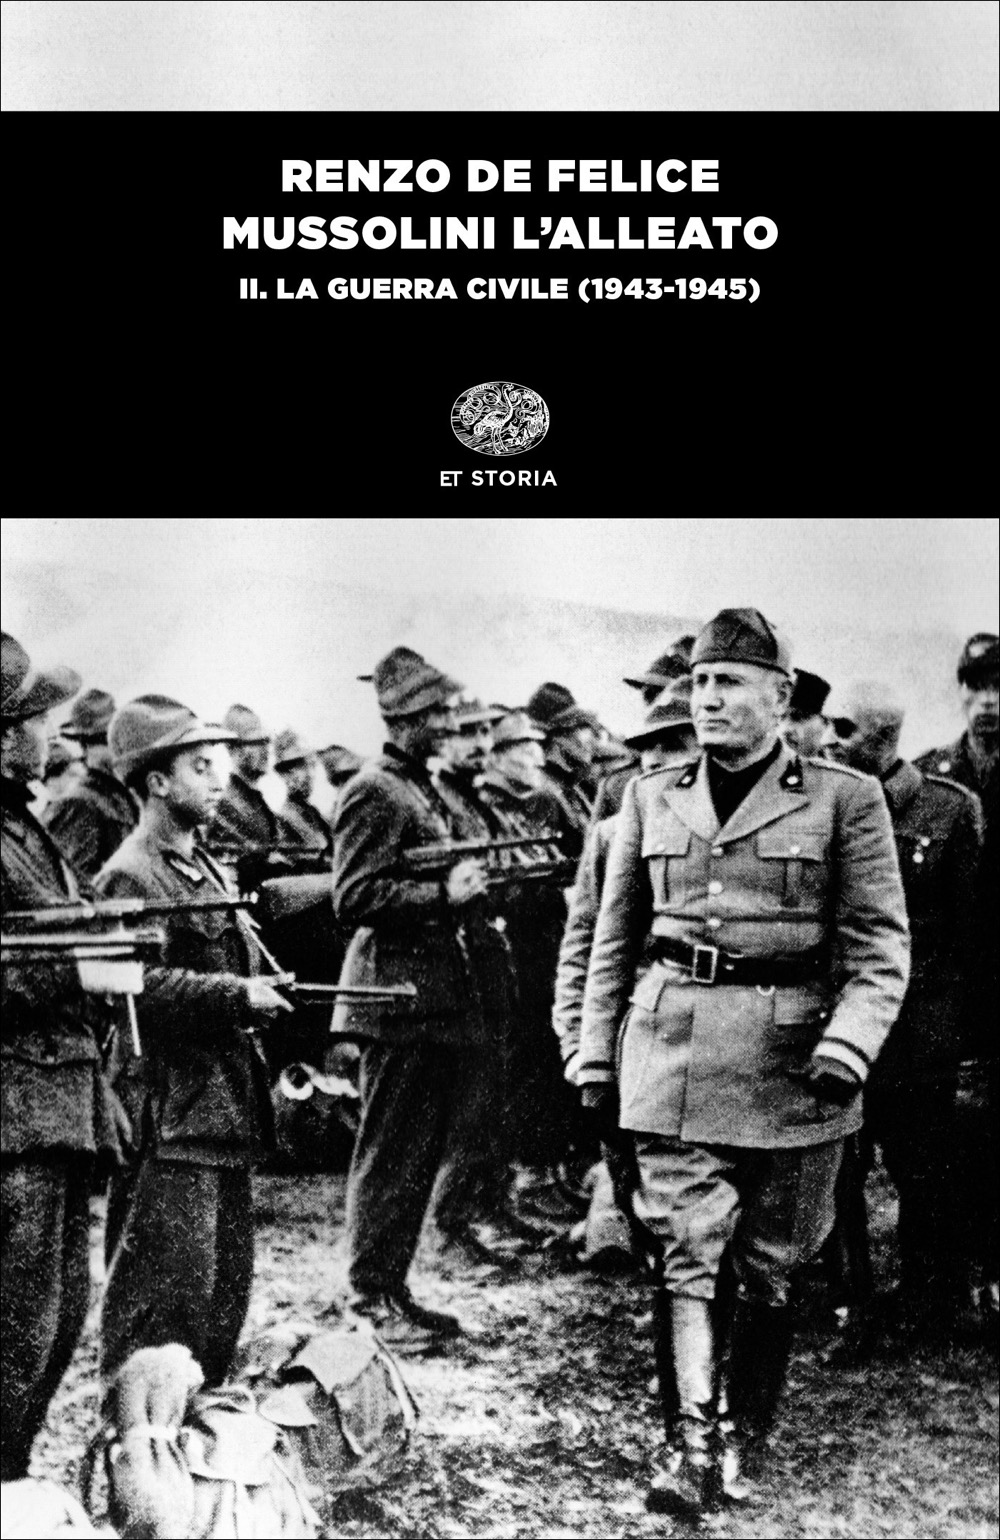 Mussolini l'alleato. II. La guerra civile (1943-1945), Renzo De Felice.  Giulio Einaudi editore - ET Storia